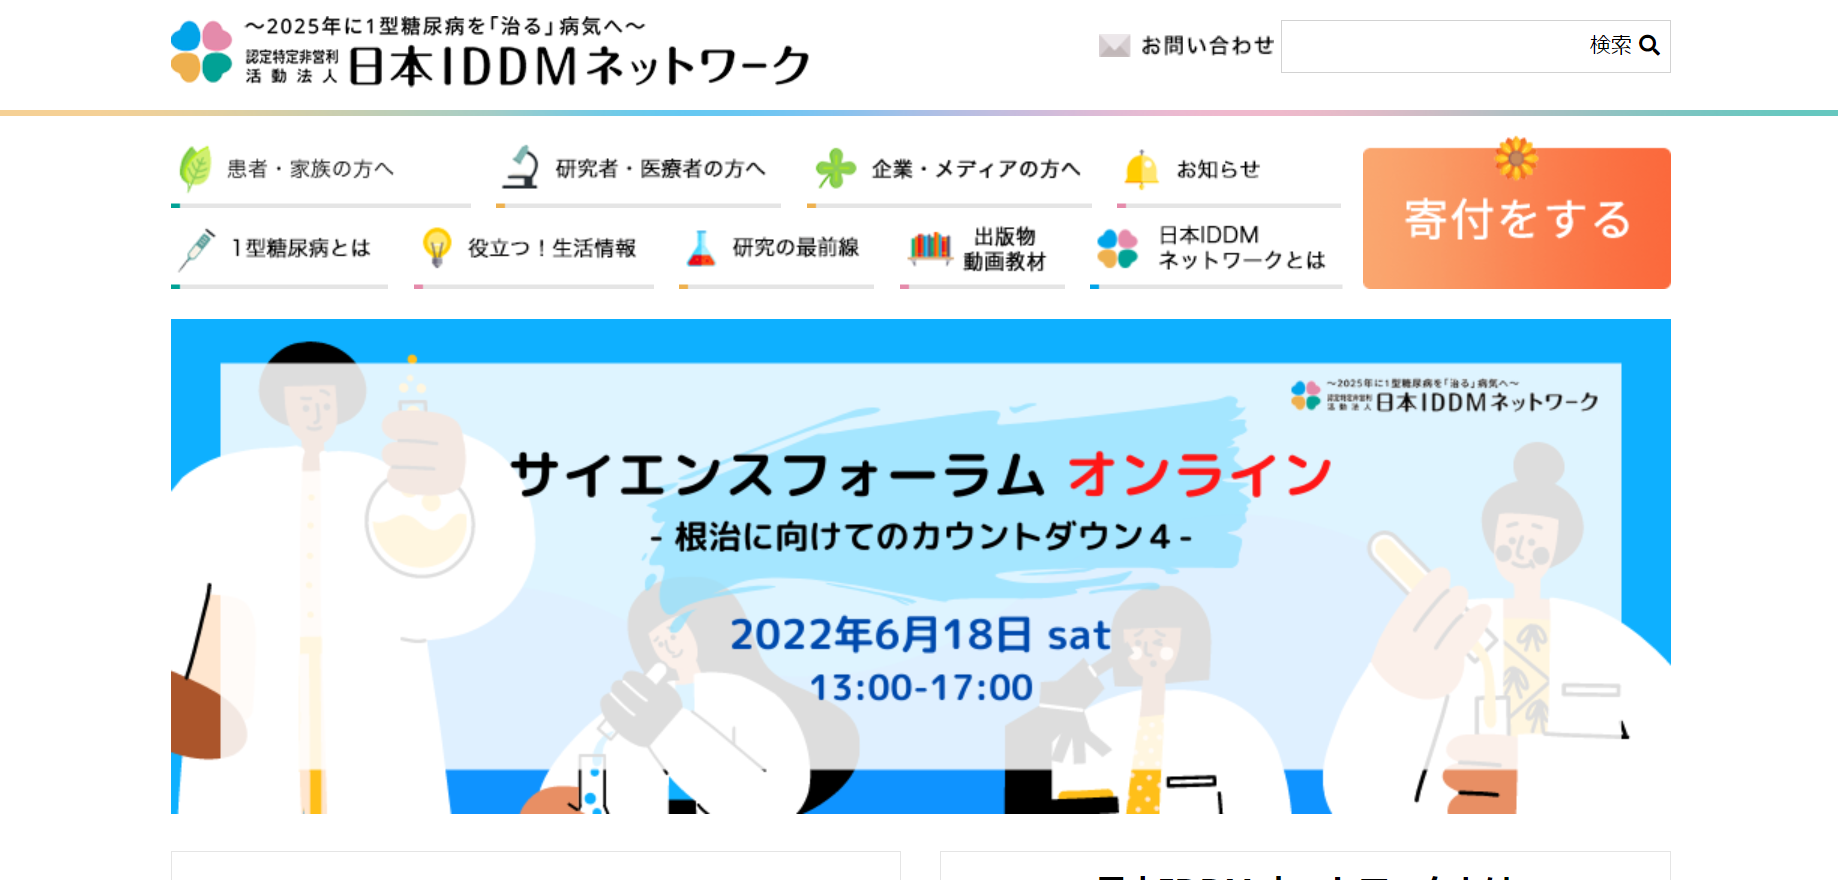 日本IDDMネットワーク 寄付